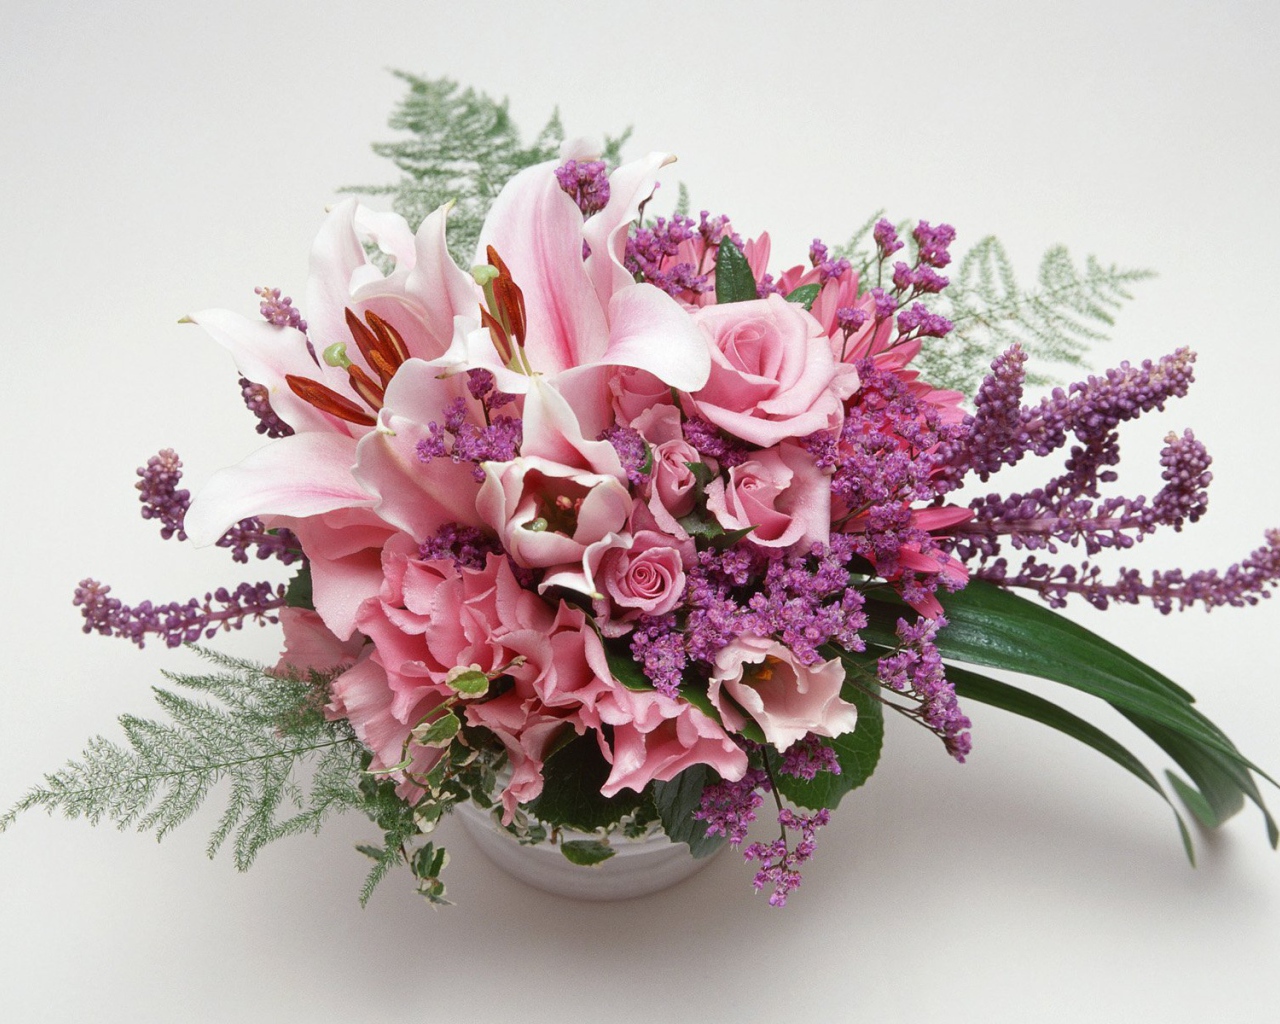 Flower vase on March 8